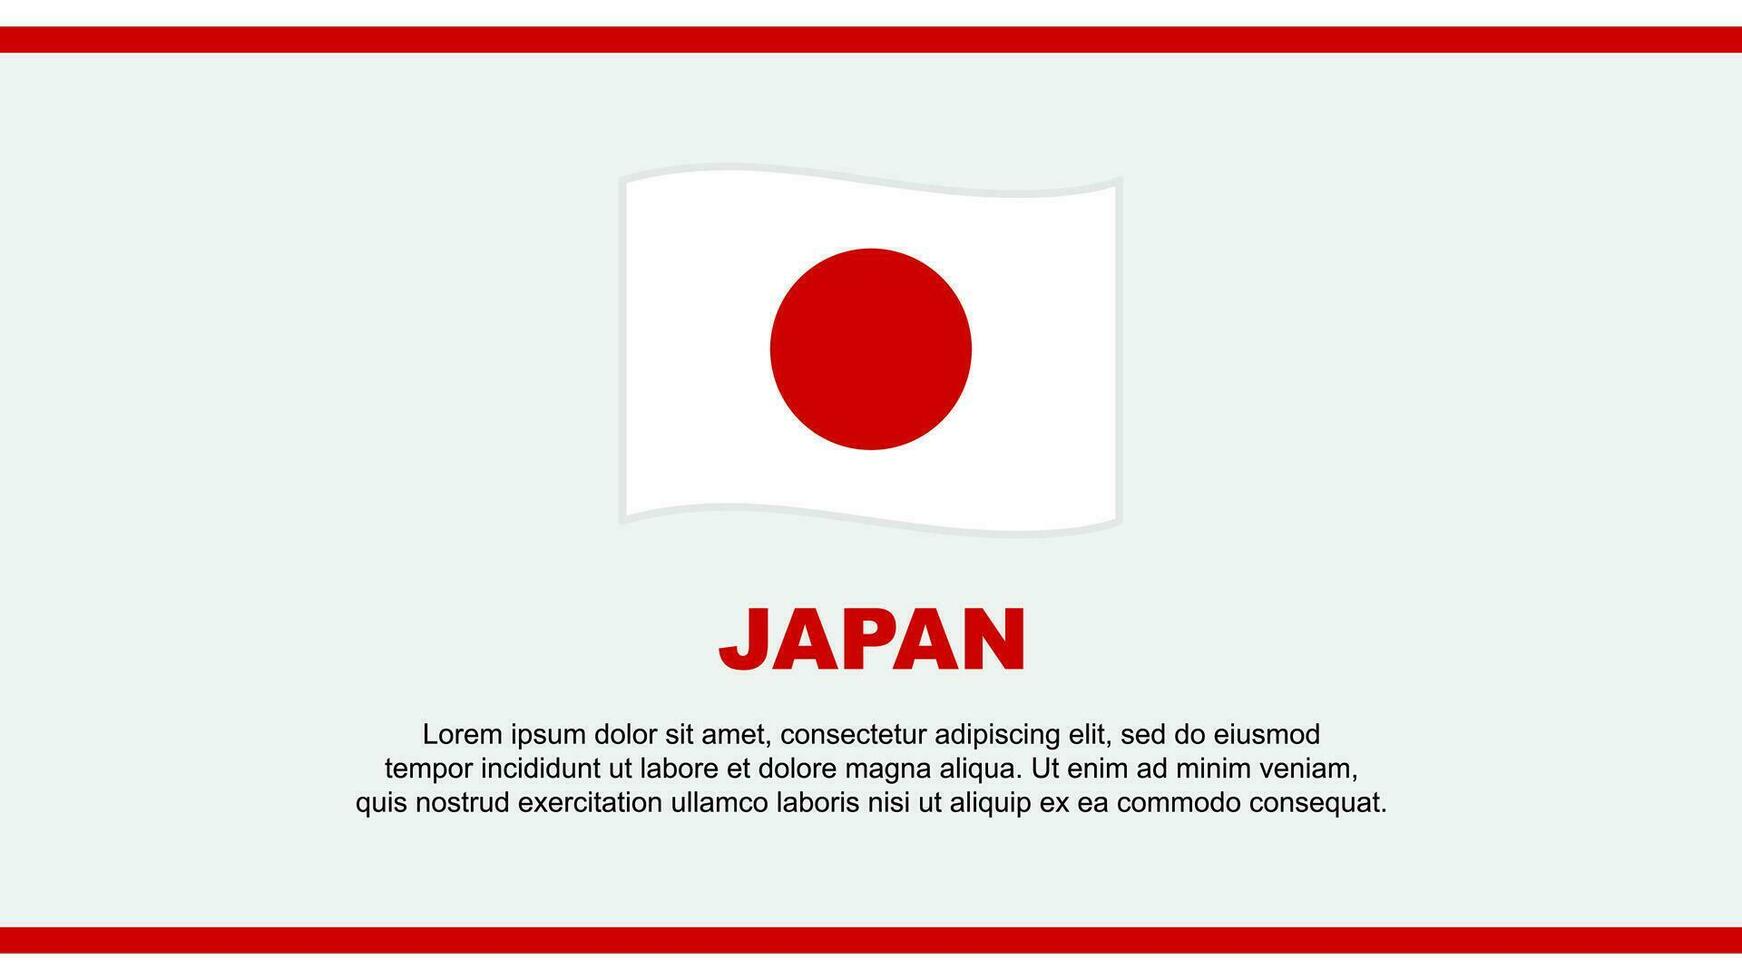 Japan Flag Abstract Background Design Template. Japan Independence Day Banner Social Media Vector Illustration. Japan Design